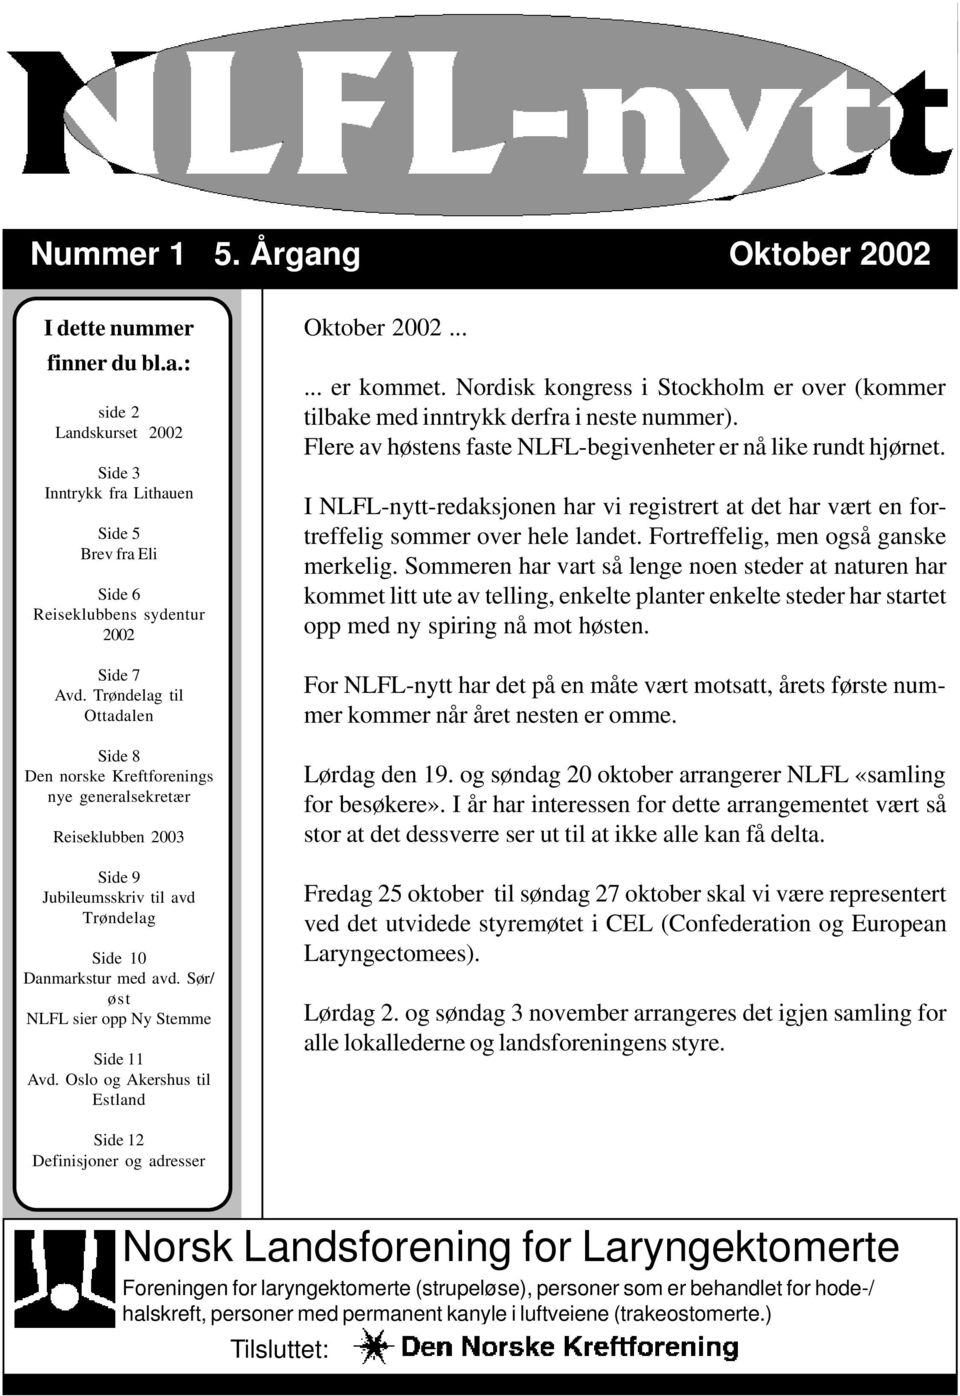 Sør/ øst NLFL sier opp Ny Stemme Side 11 Avd. Oslo og Akershus til Estland Oktober 2002...... er kommet. Nordisk kongress i Stockholm er over (kommer tilbake med inntrykk derfra i neste nummer).